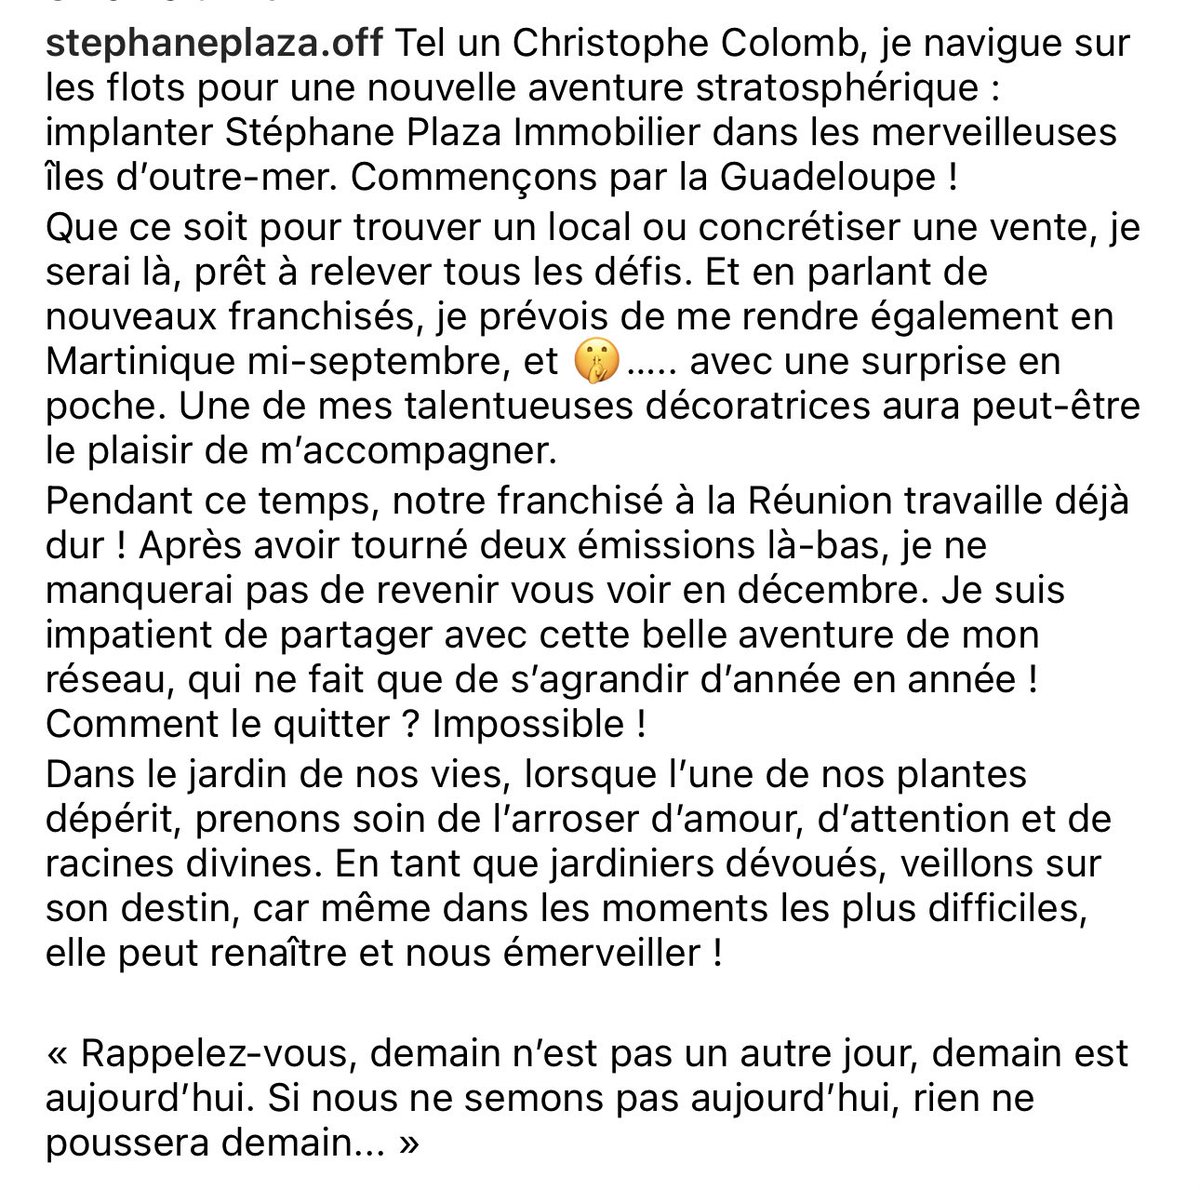 « Tel un Christophe Colomb… »
« Commençons par la Guadeloupe… également en Martinique »

Il n’a pas été en cours d’histoire Stephane Plaza ?